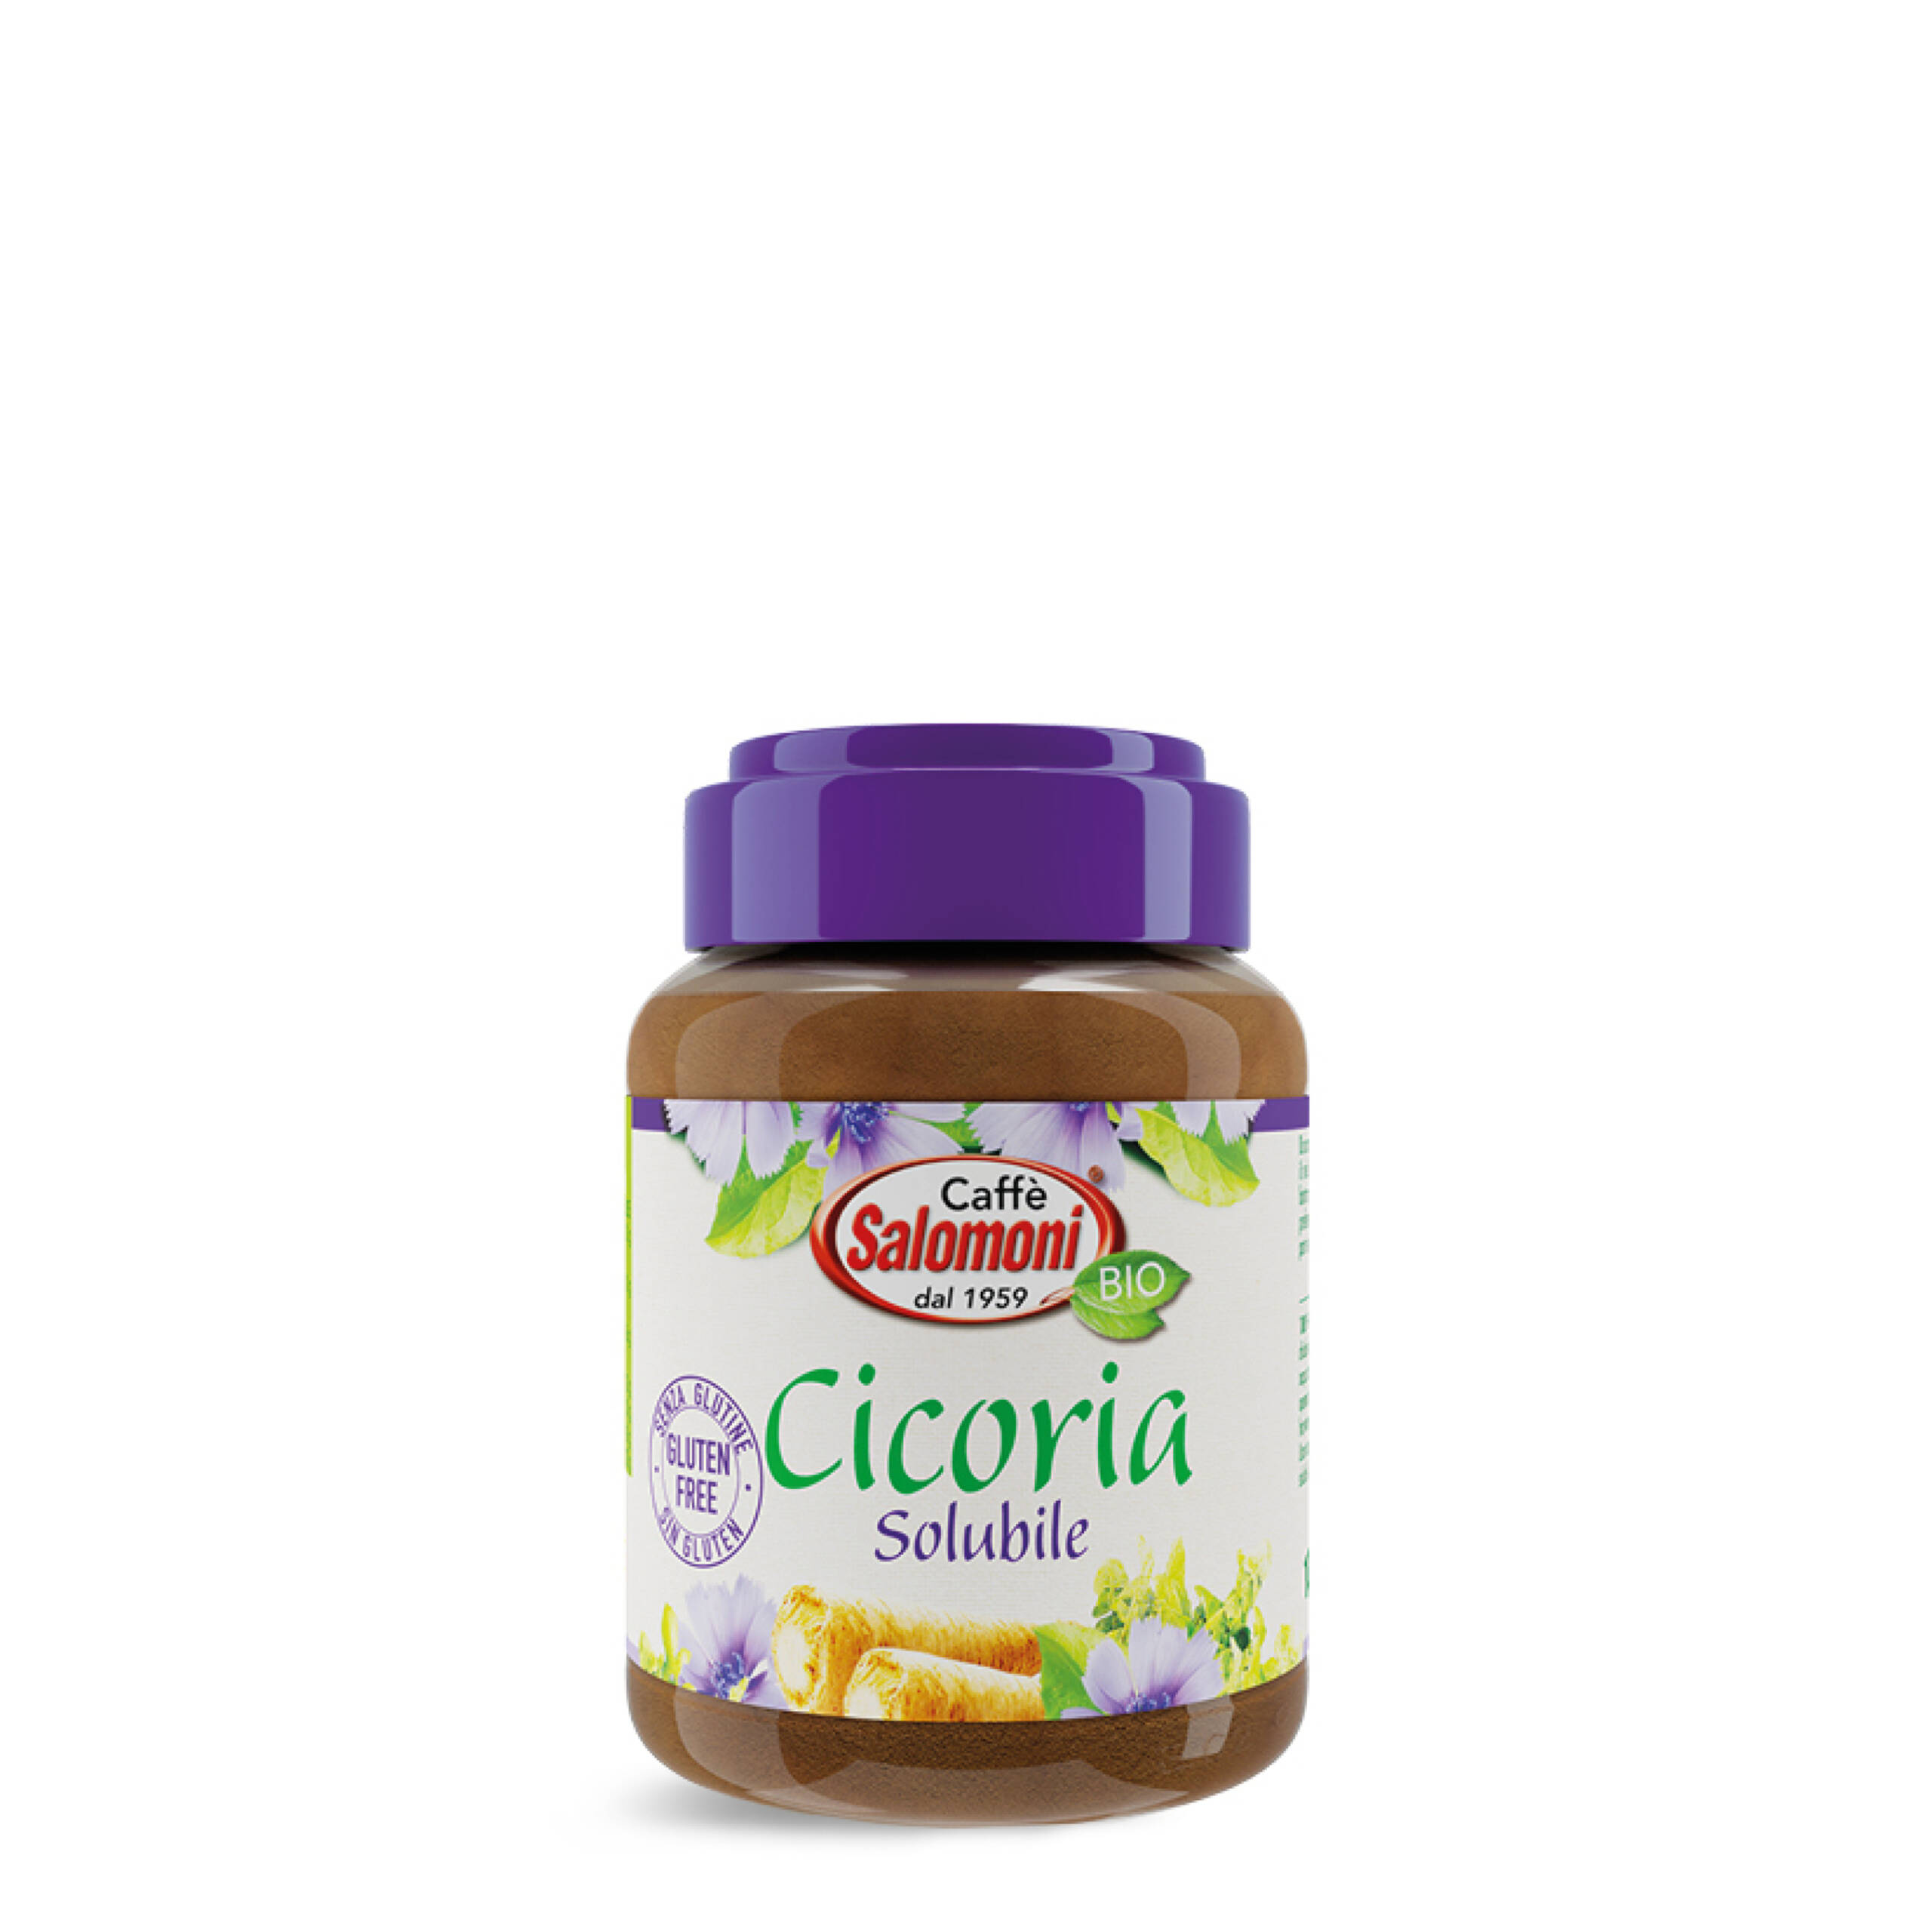 Cicoria Tostata Solubile - Senza Glutine